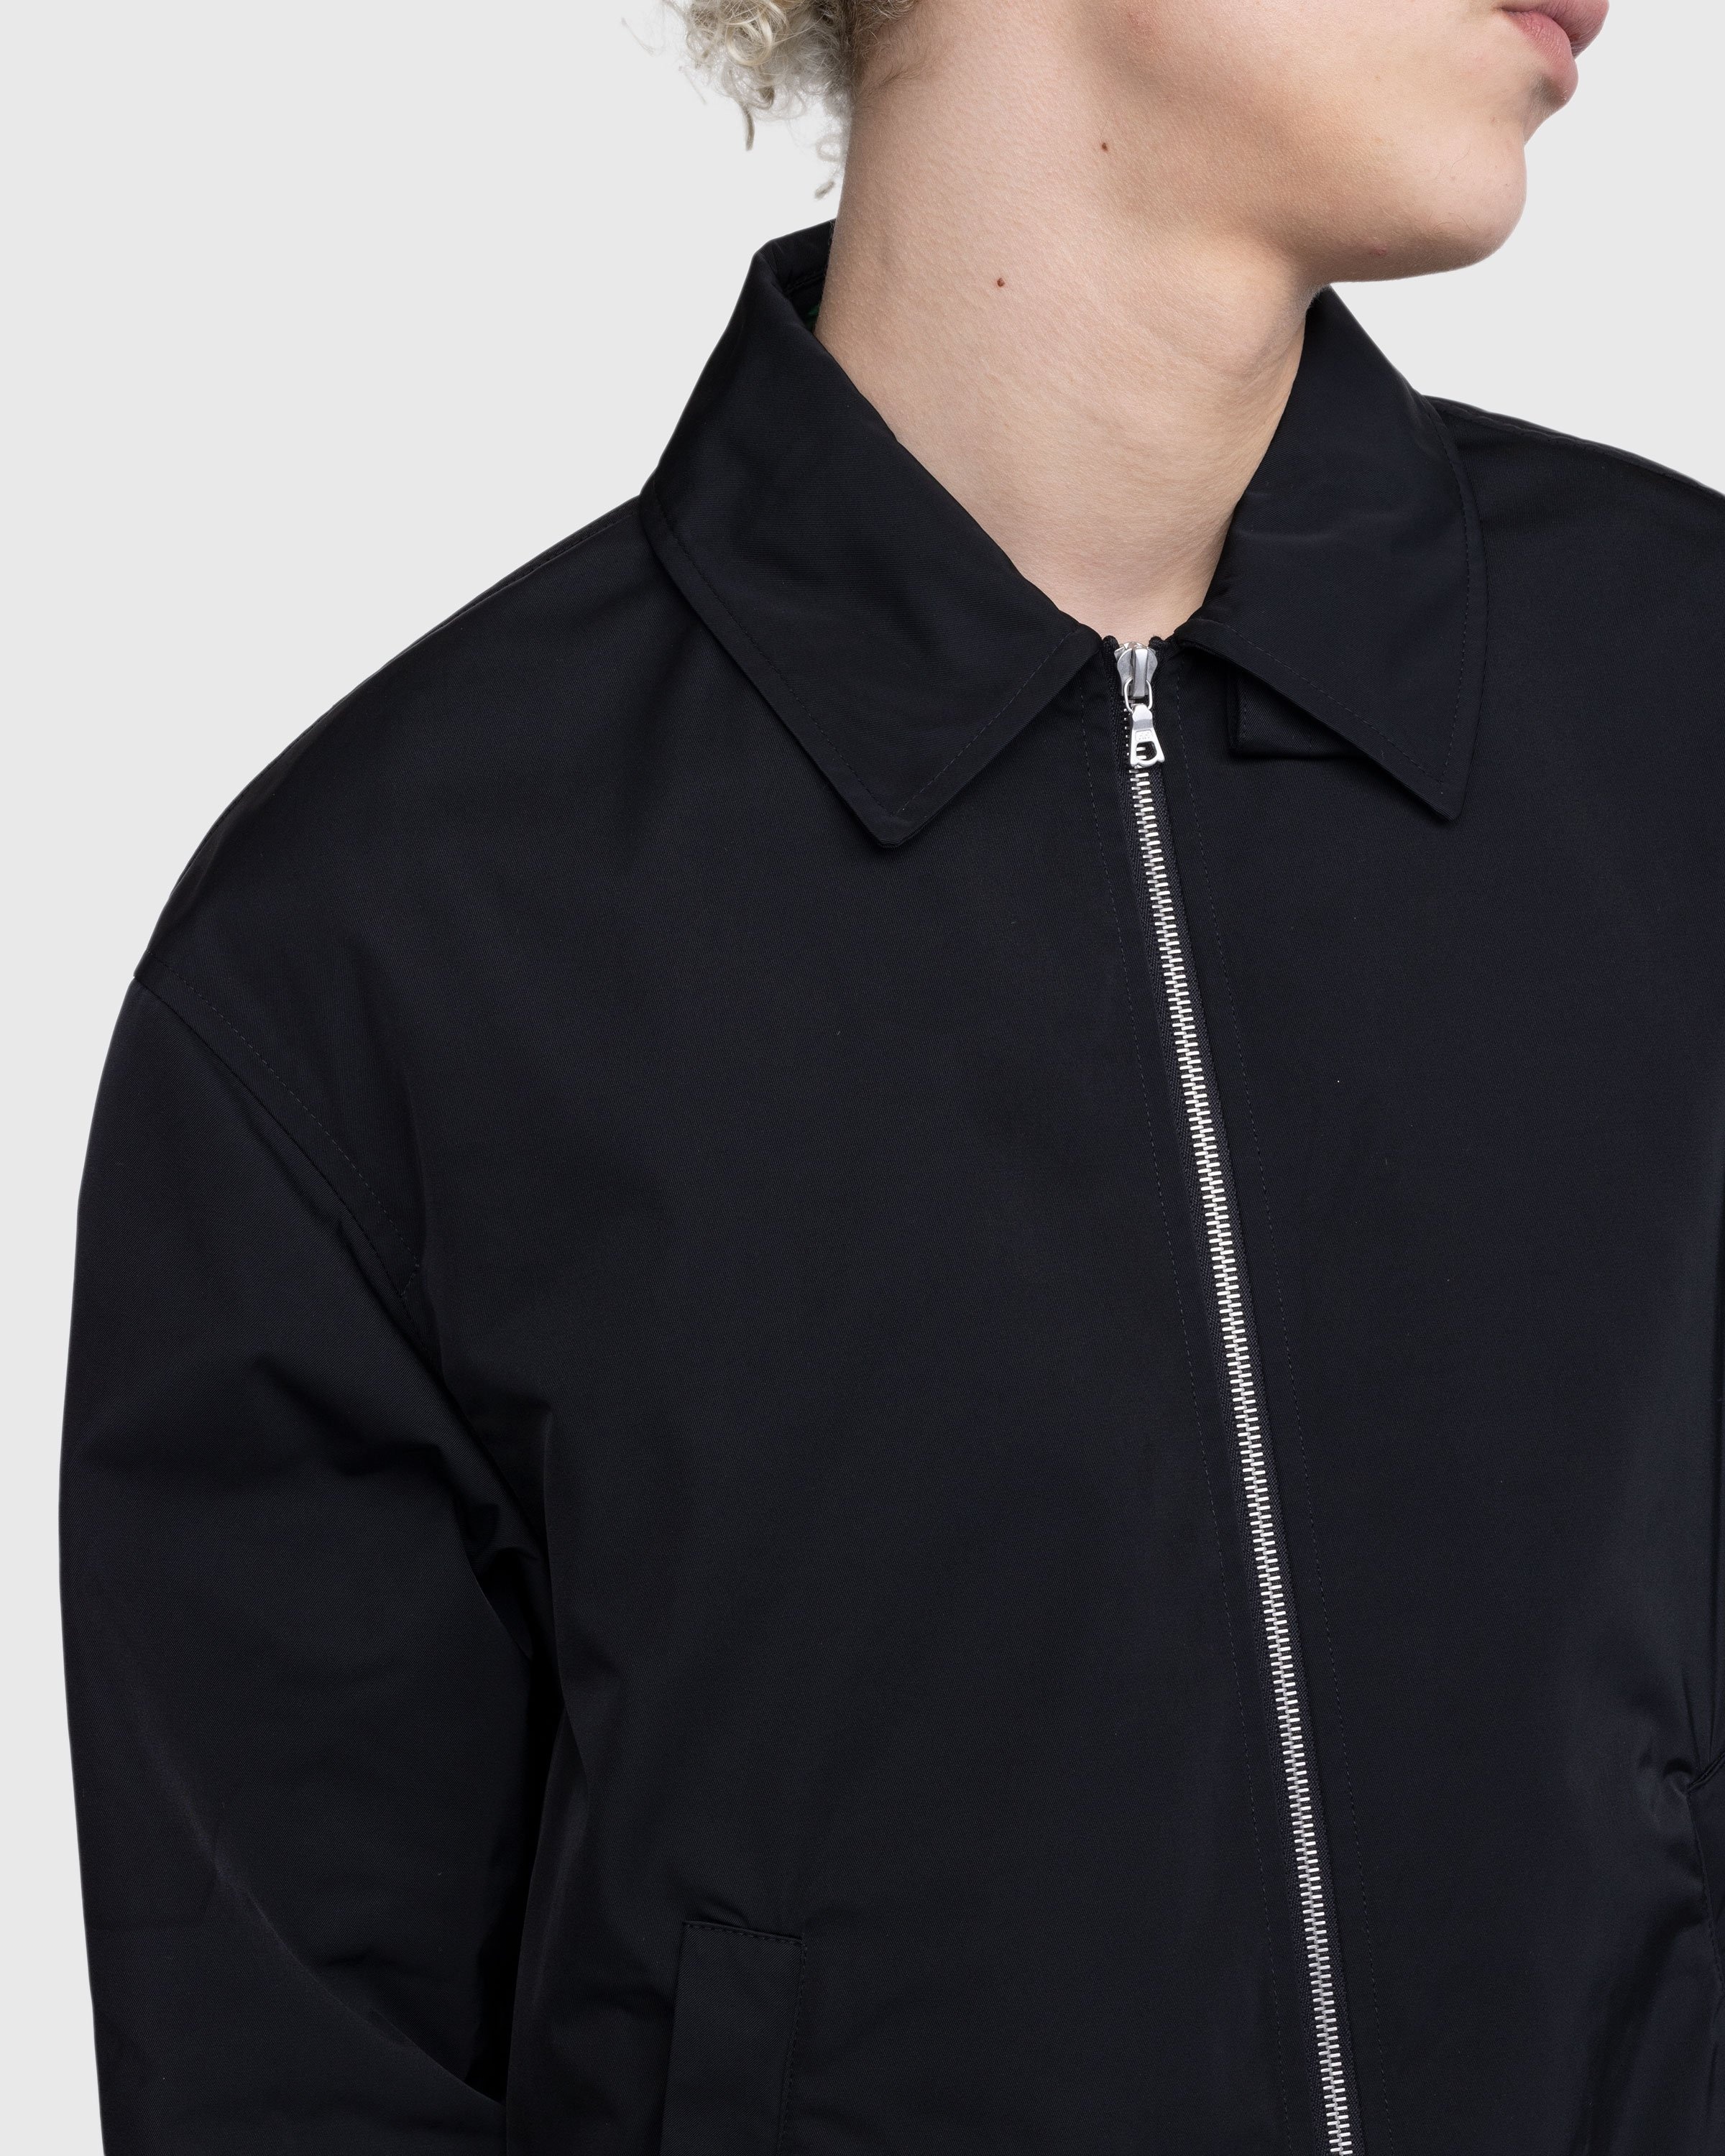 Dries van Noten – Vona Jacket Black - Outerwear - Black - Image 6